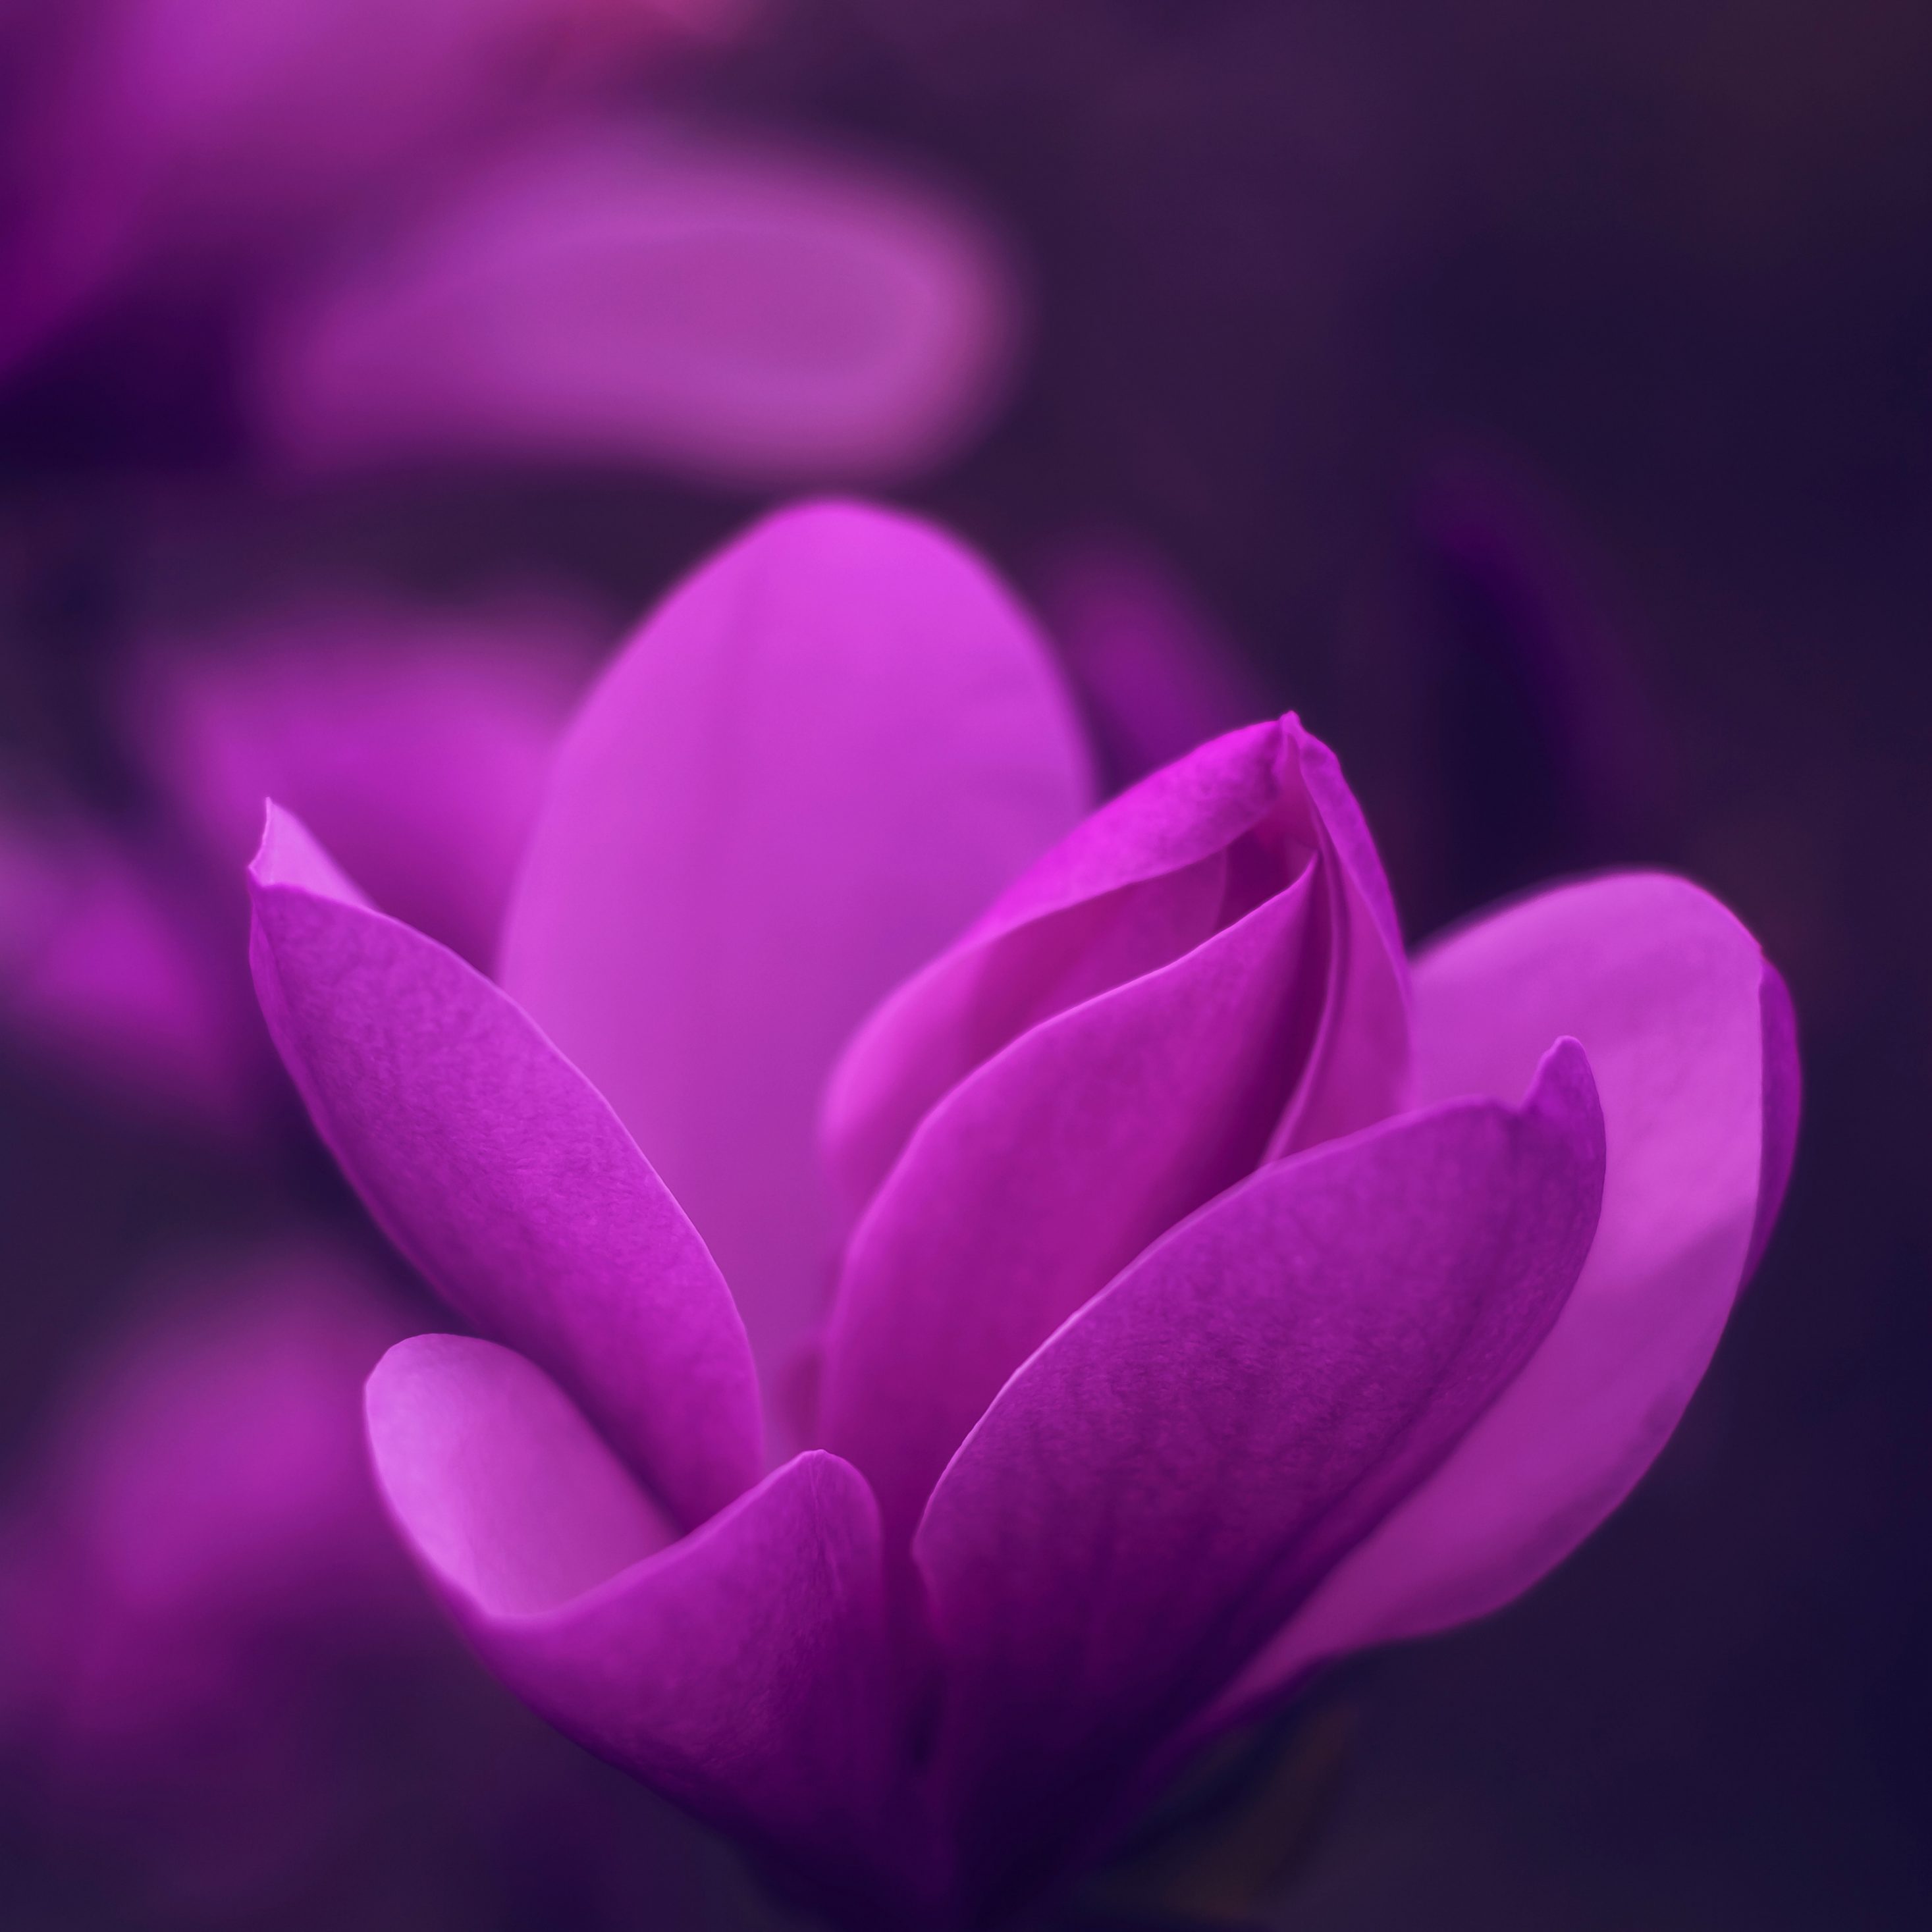 2934x2934 iOS iPad wallpaper 4k Purple Bloom Blossom Petaled Flower iPad Wallpaper 2934x2934 pixels resolution